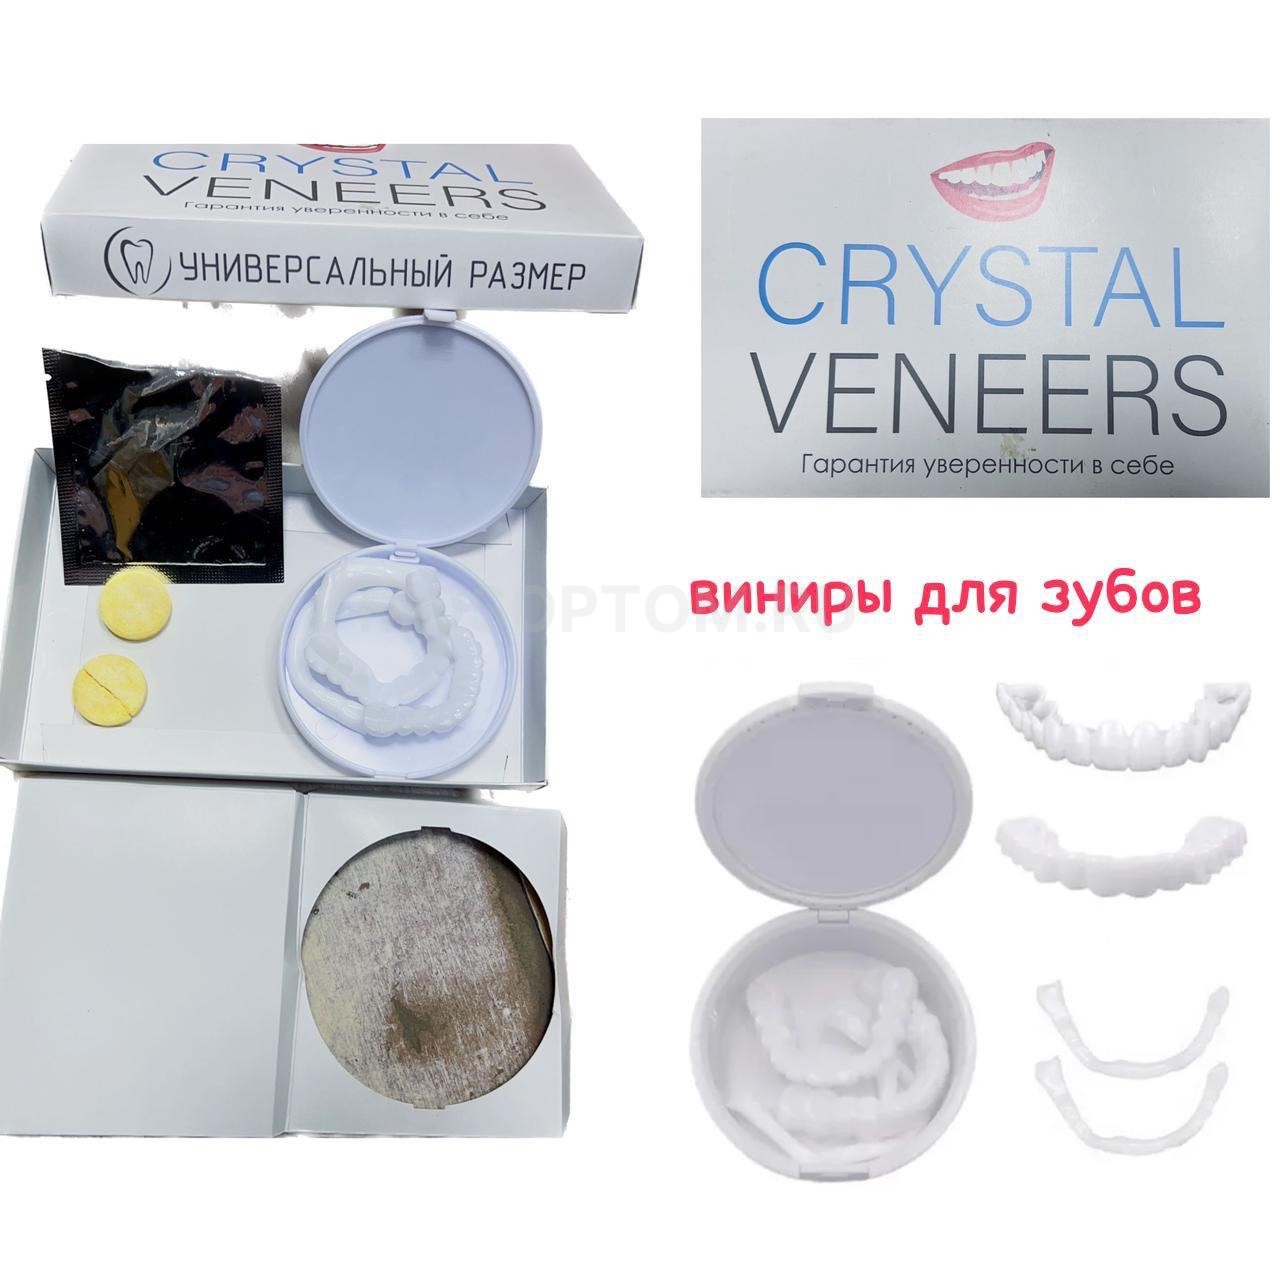 Накладные виниры для зубов с универсальным размером Crystal Veneers оптом - Фото №2